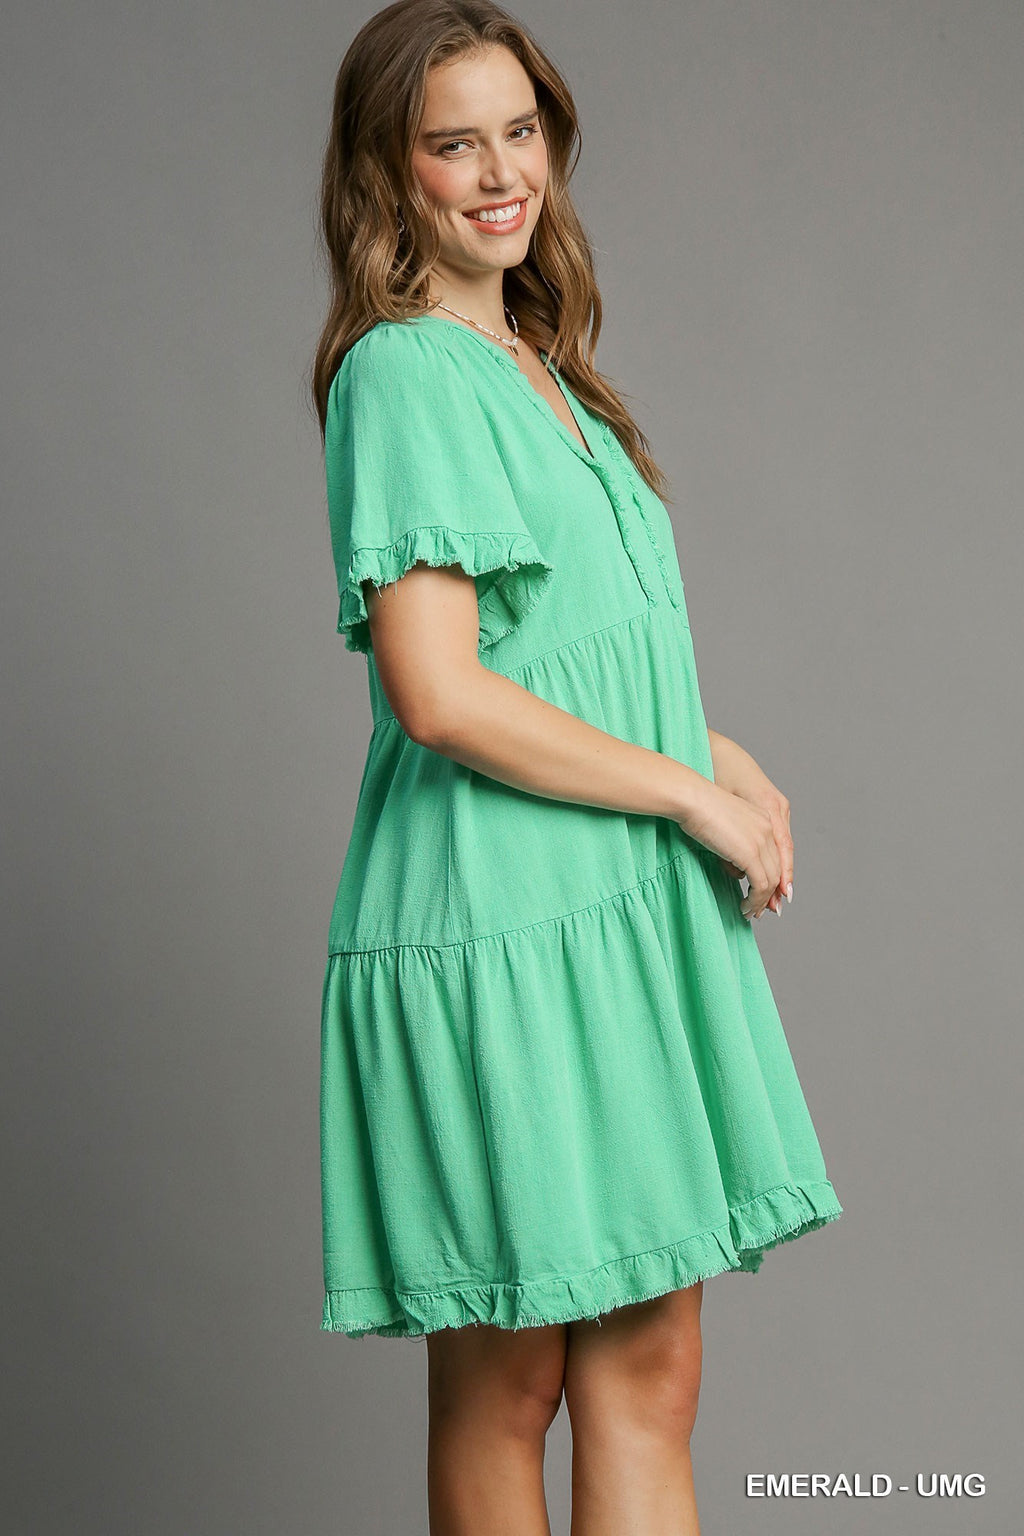 "Tracine" Linen Blend Dress, 2 colors - The Katie Grace Boutique